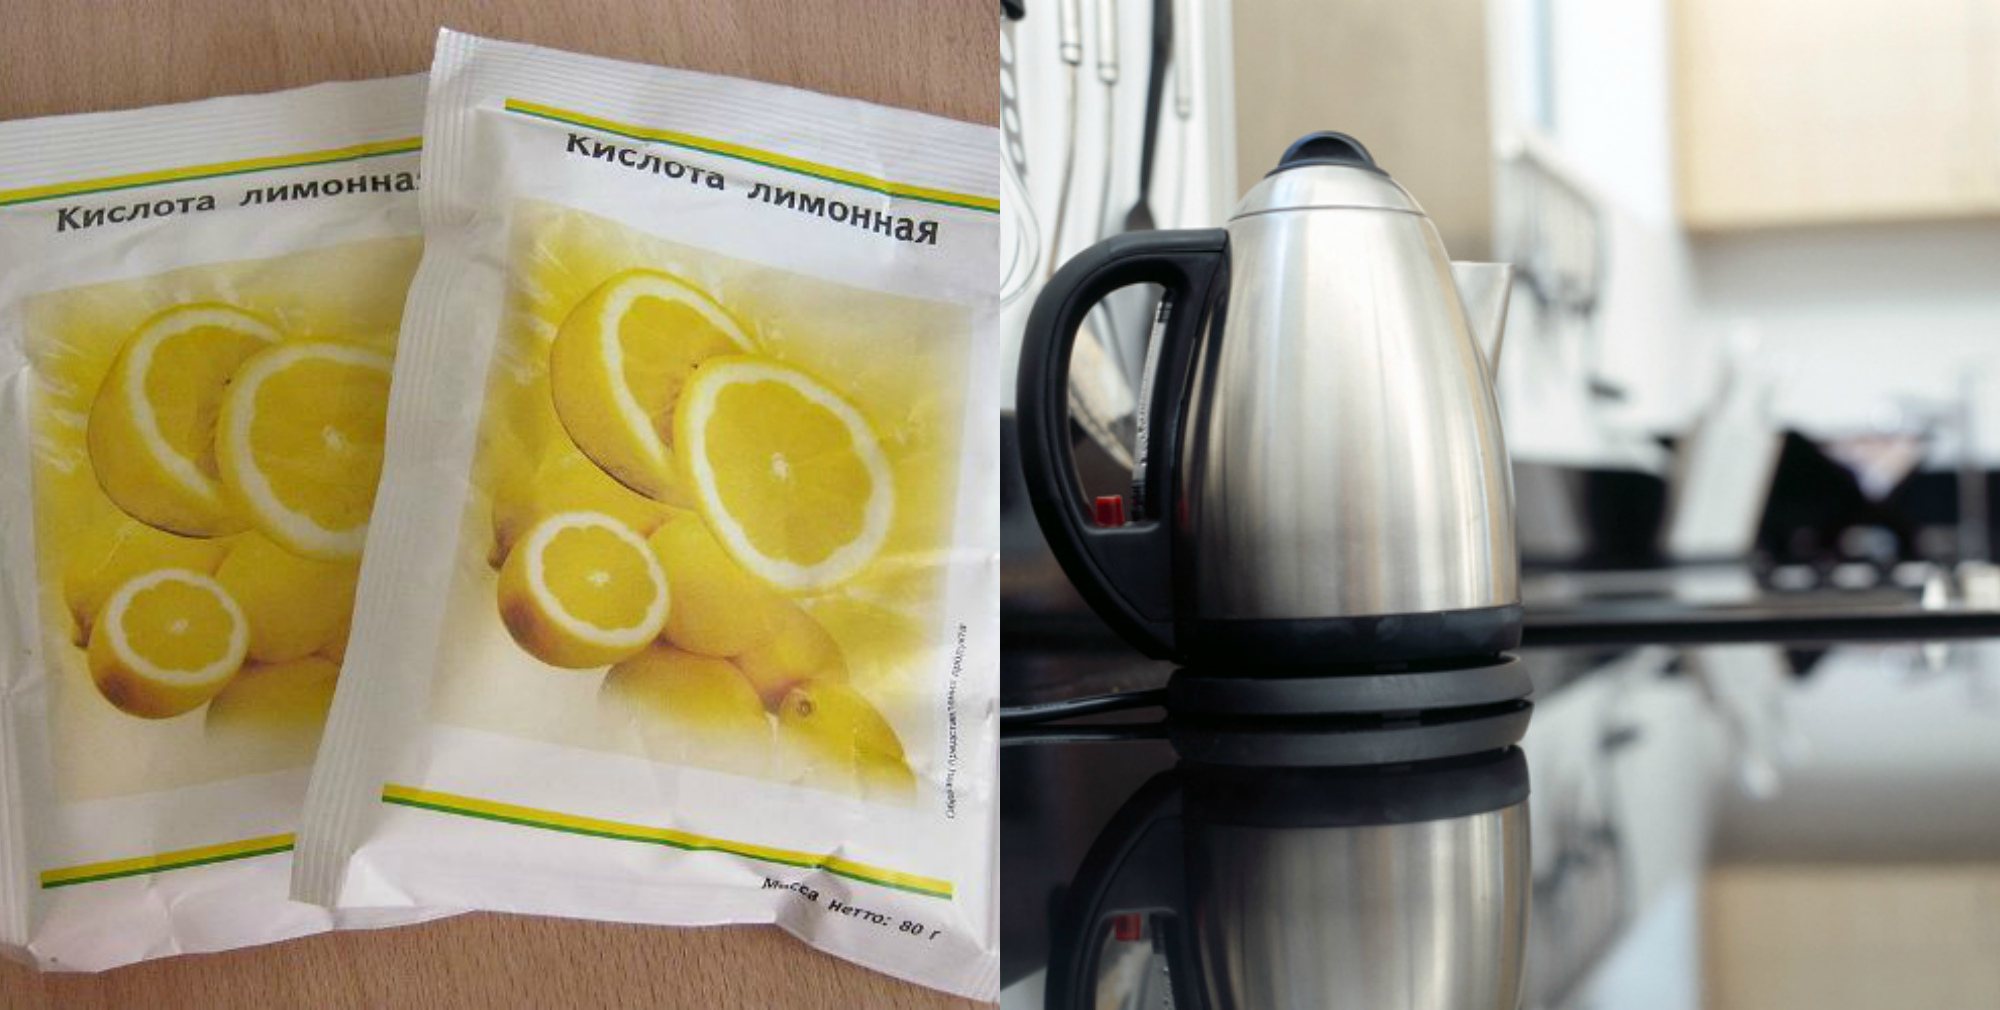 Лимонная кислота для чистки чайника от накипи. Лимонная кислота от накипи в чайнике электрическом. Накипь лимонная кислота электрический чайник. Чистка чайника лимонной кислотой. Накипь в чайнике лимонной кислотой.